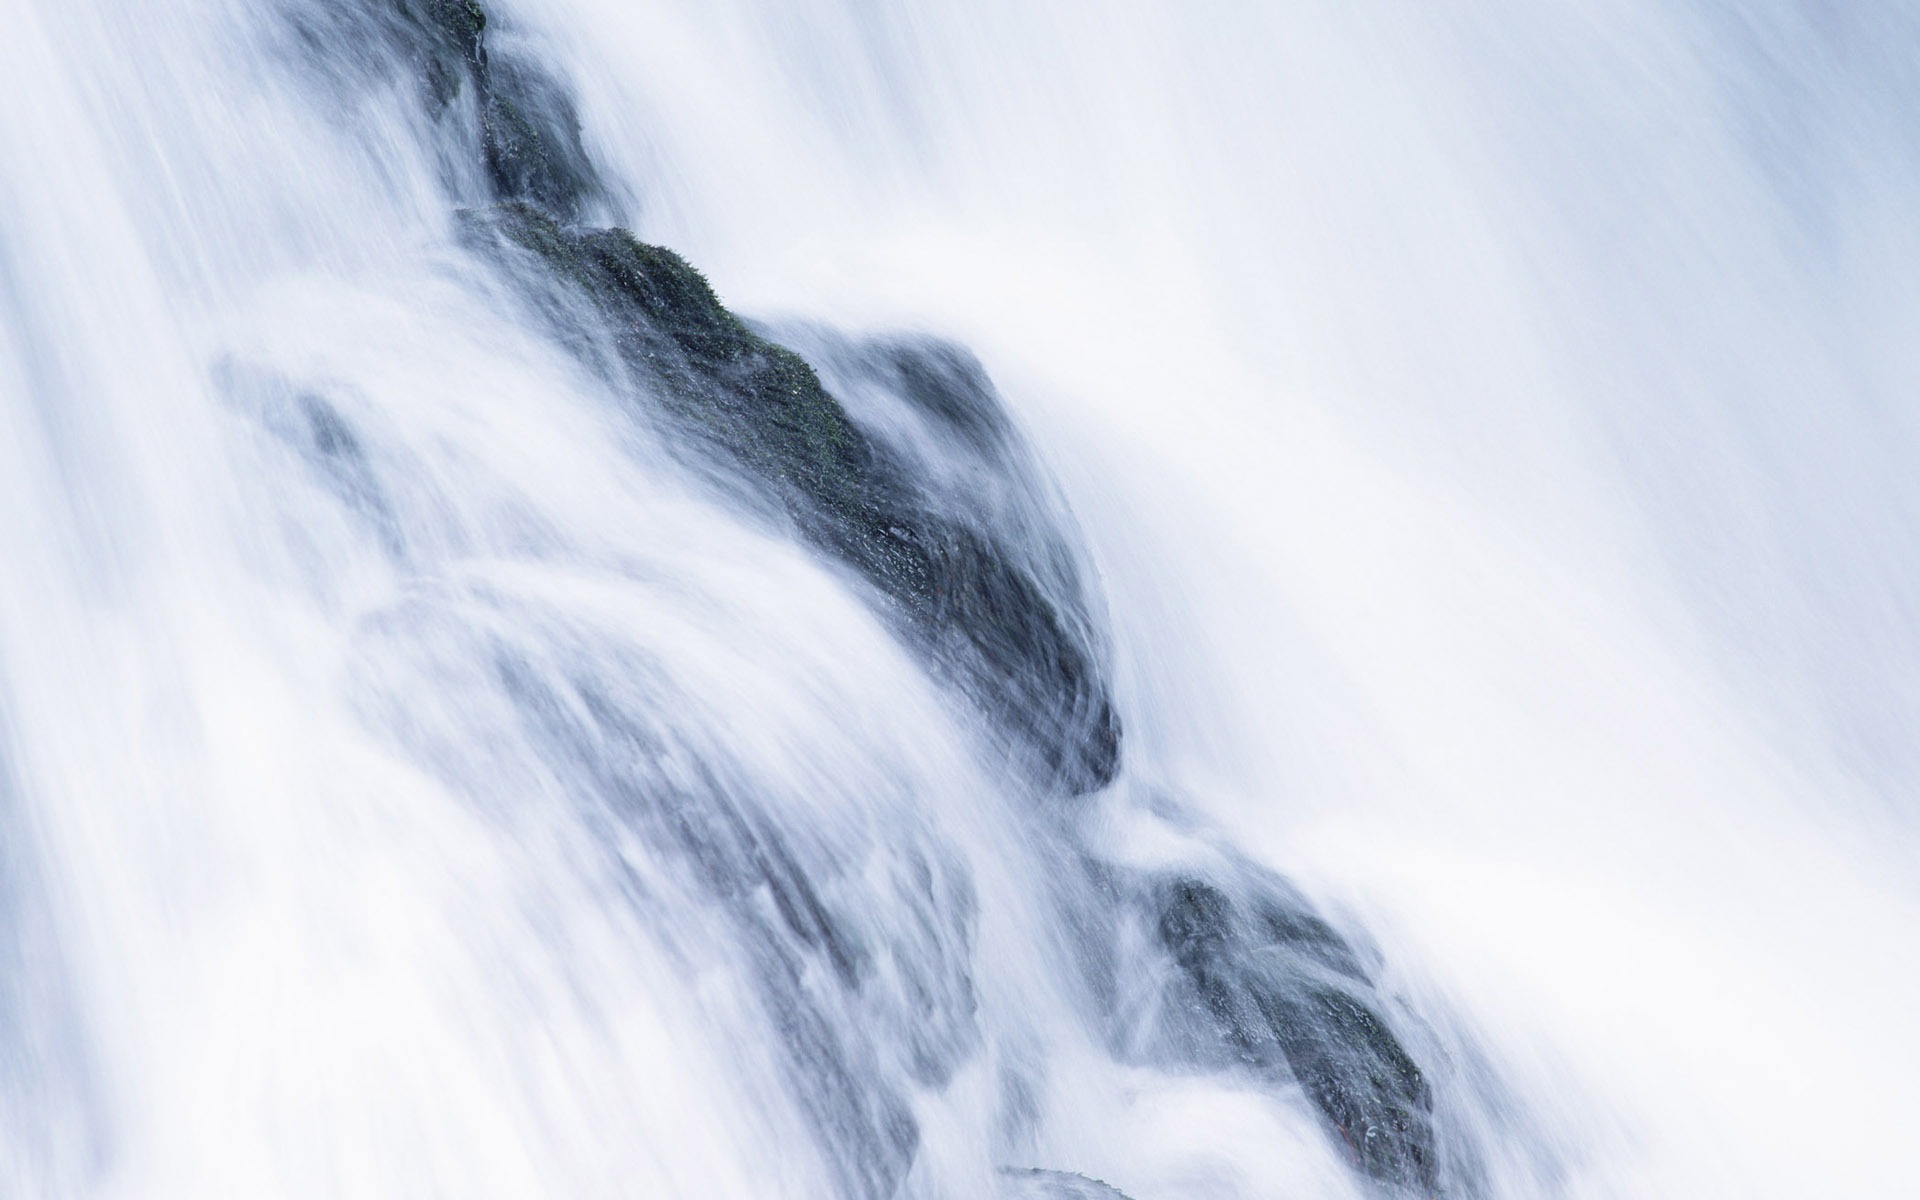 Waterfall flux HD Wallpapers #32 - 1920x1200